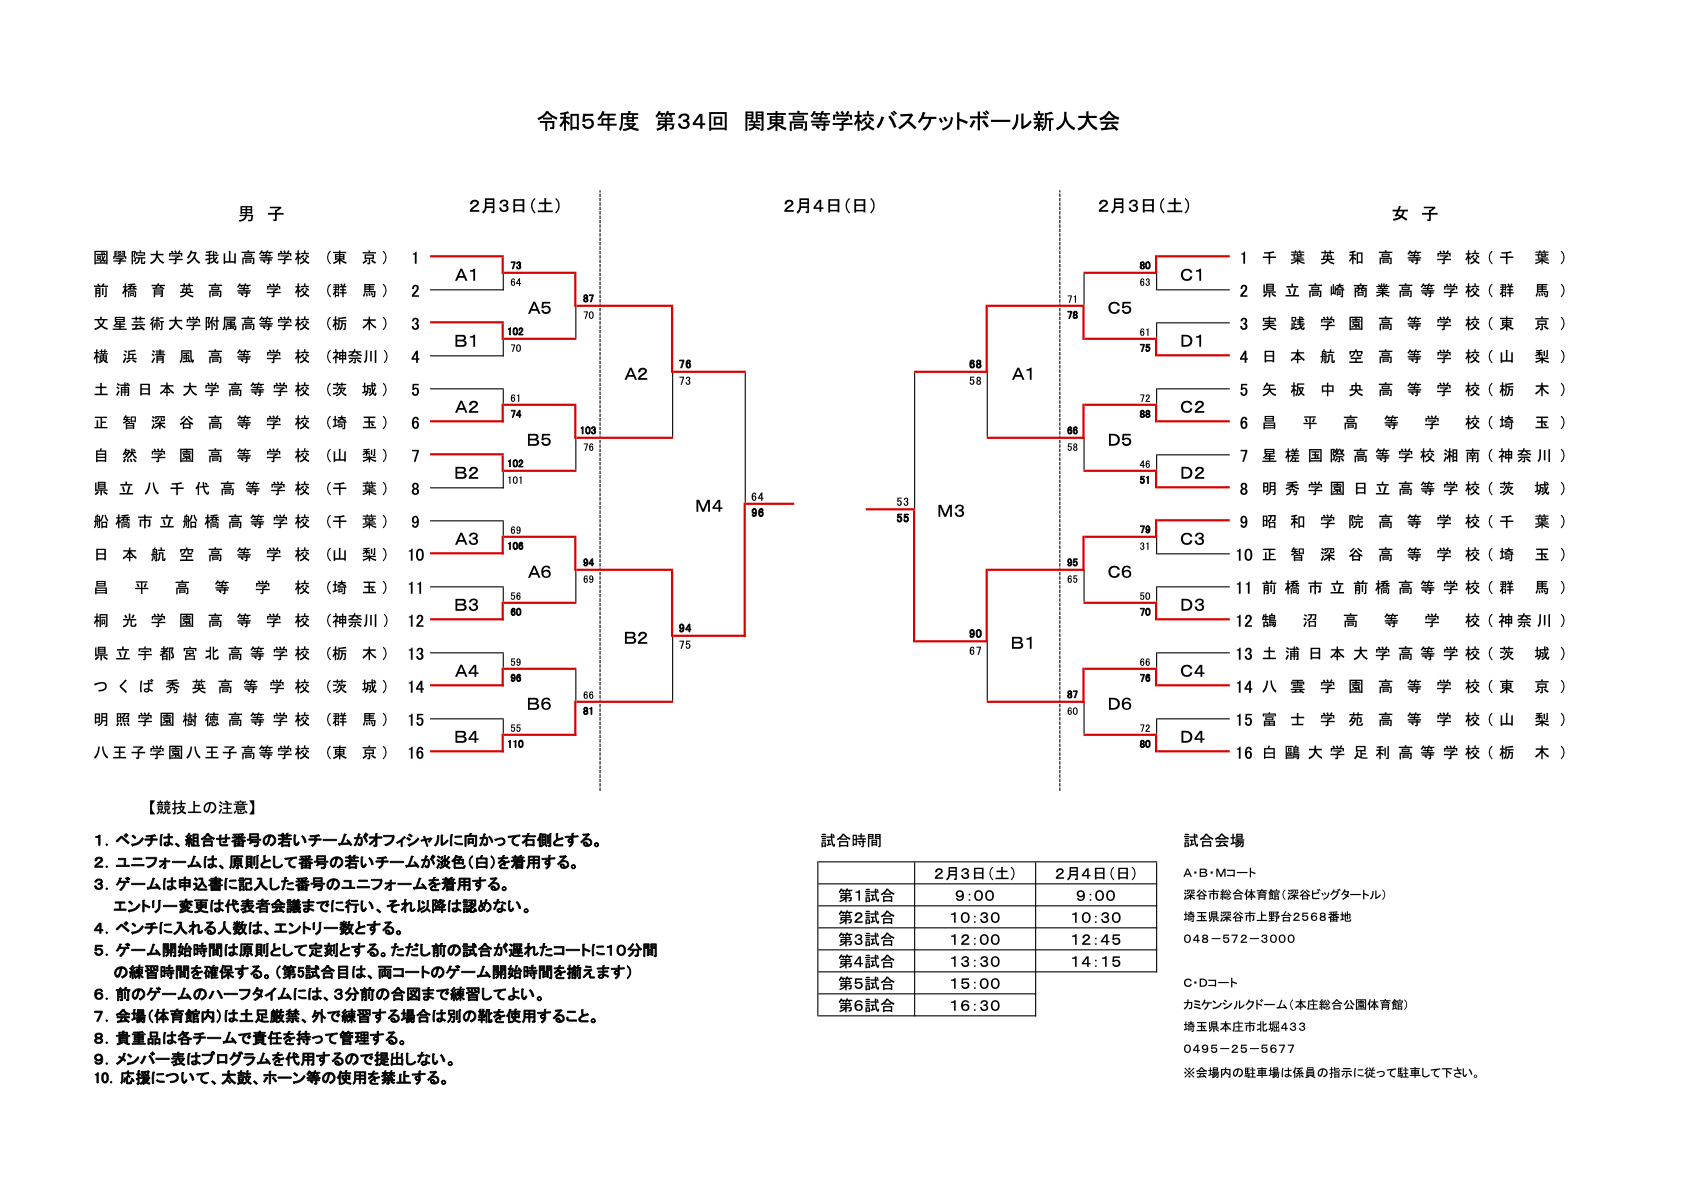 05_freshman_kanto_tournament